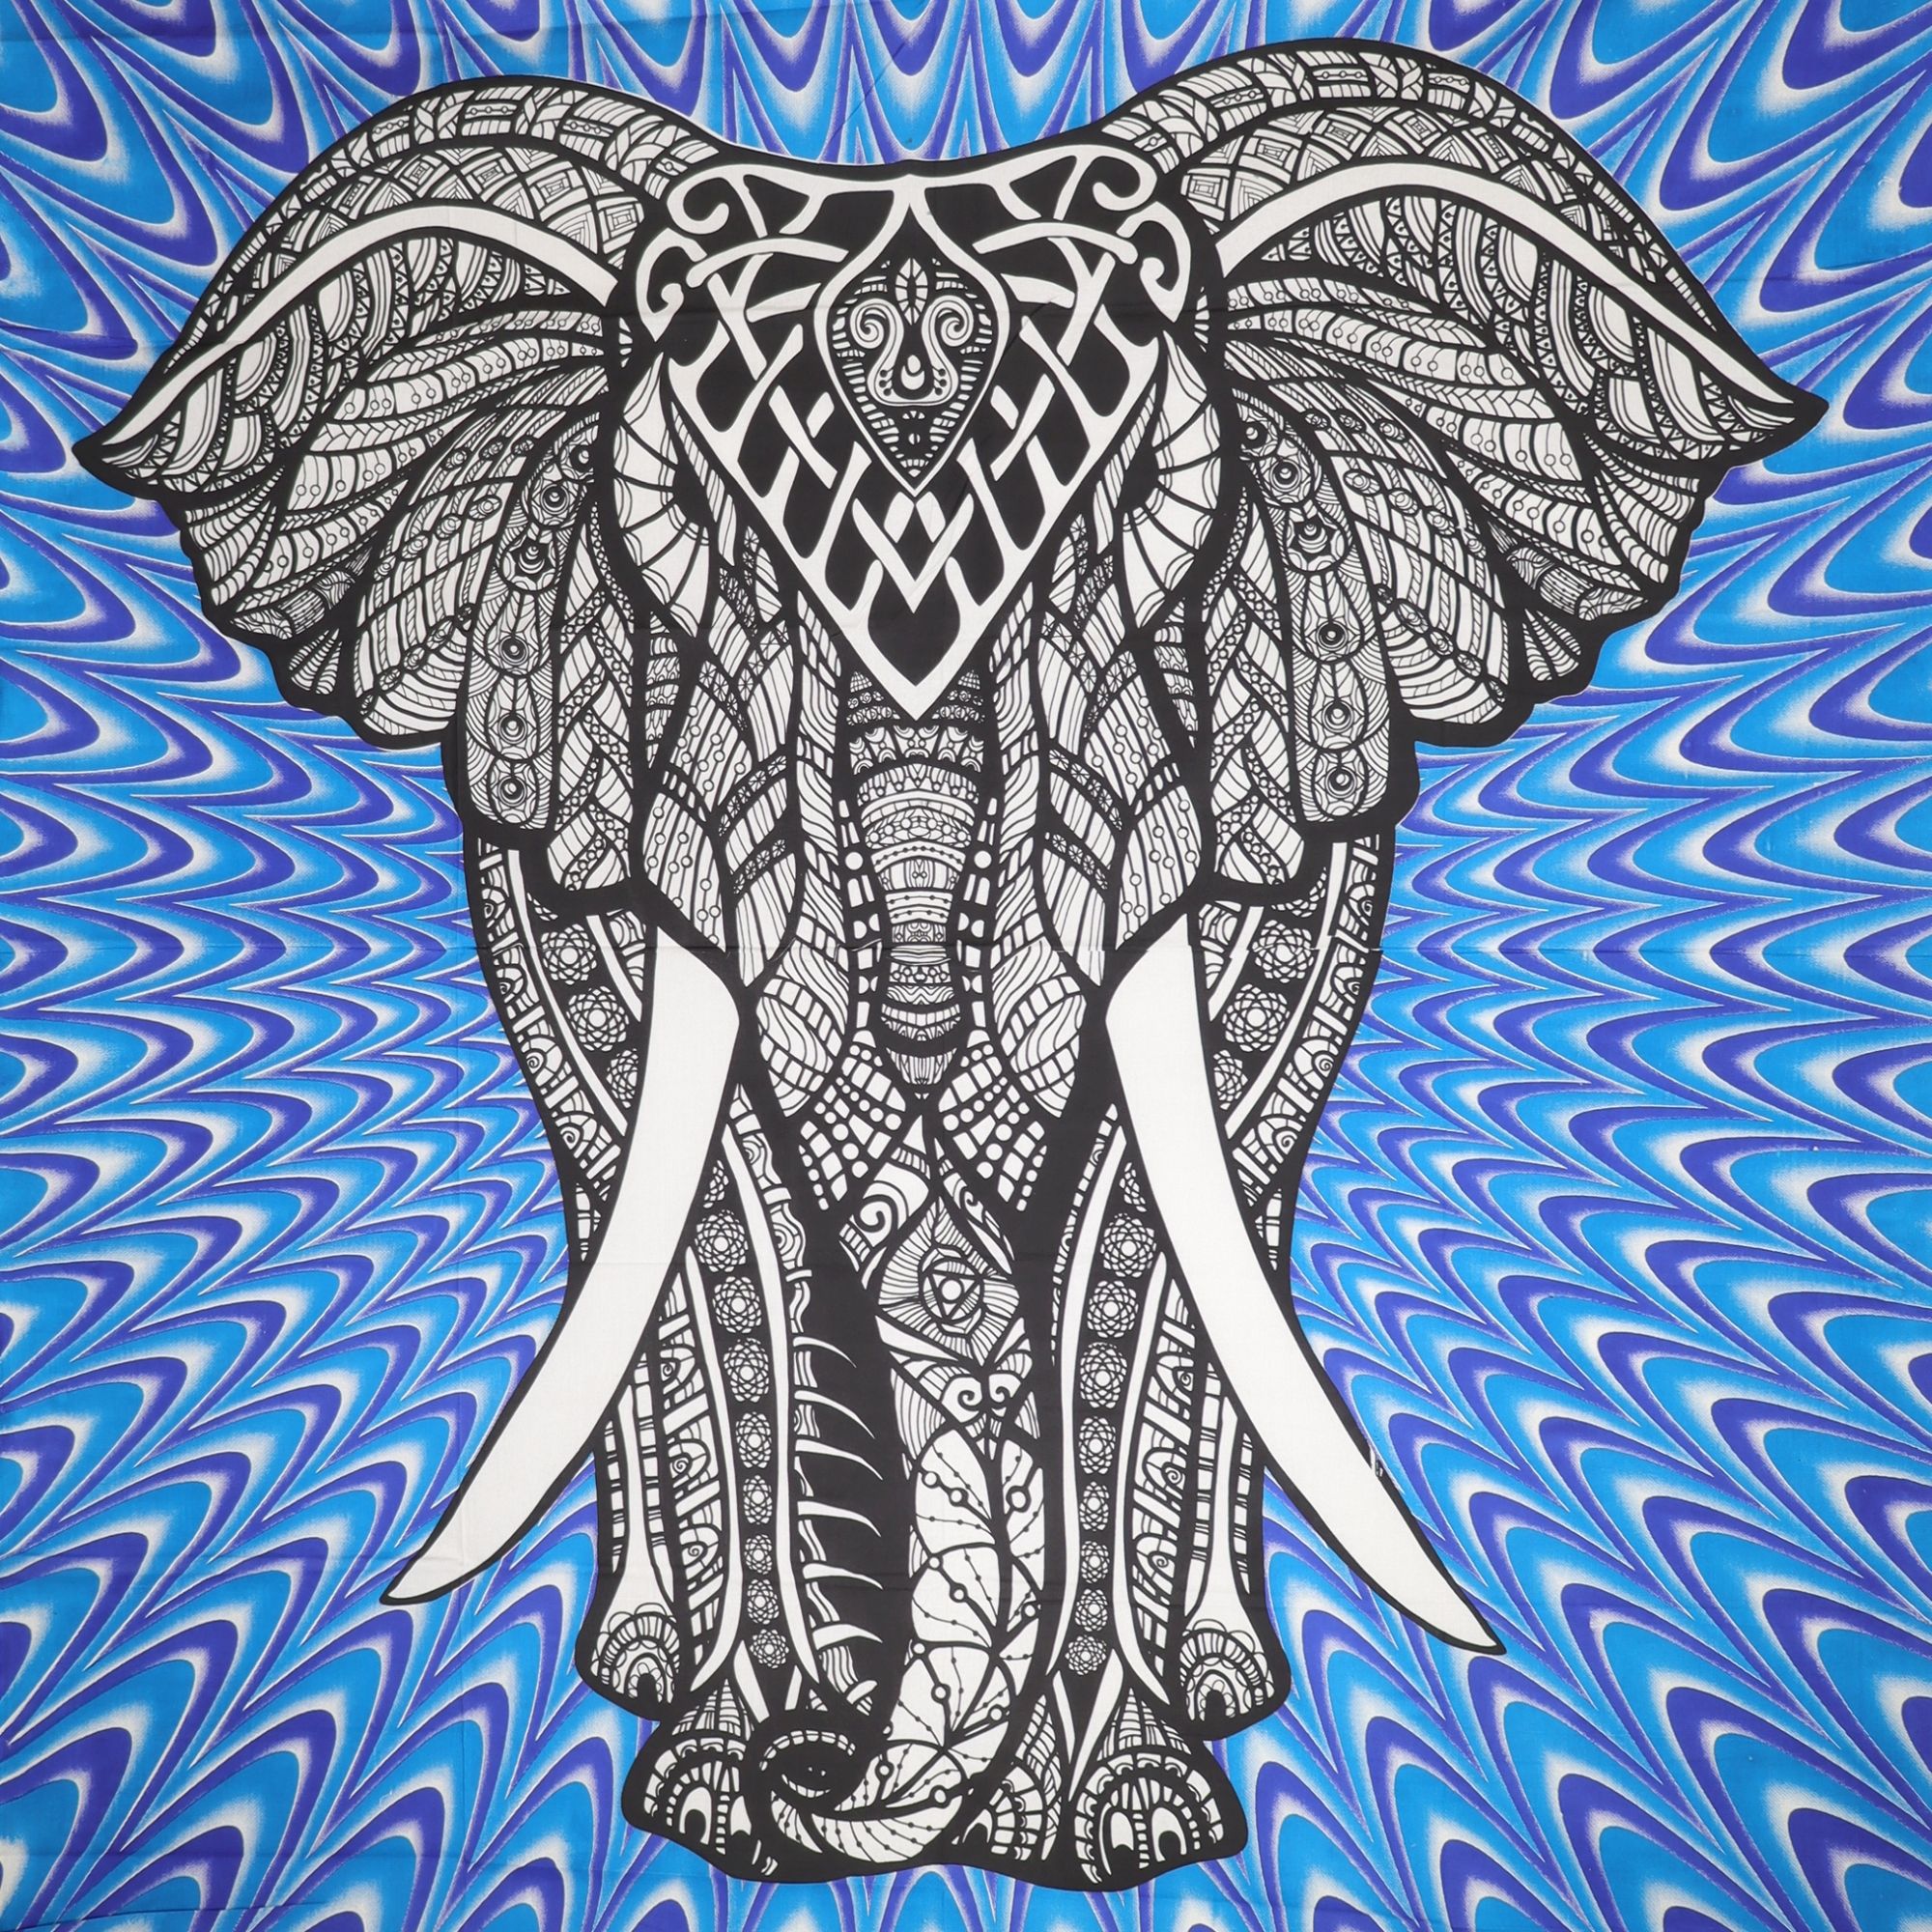 Wandtuch XXL 210x230 - Elefant mit Stoßzähnen - 100% Baumwolle - detailreicher indischer Druck - mehrfarbig - dekoratives Tuch, Wandbild, Tagesdecke, Bedcover, Vorhang, Picknick-Decke, Strandtuch